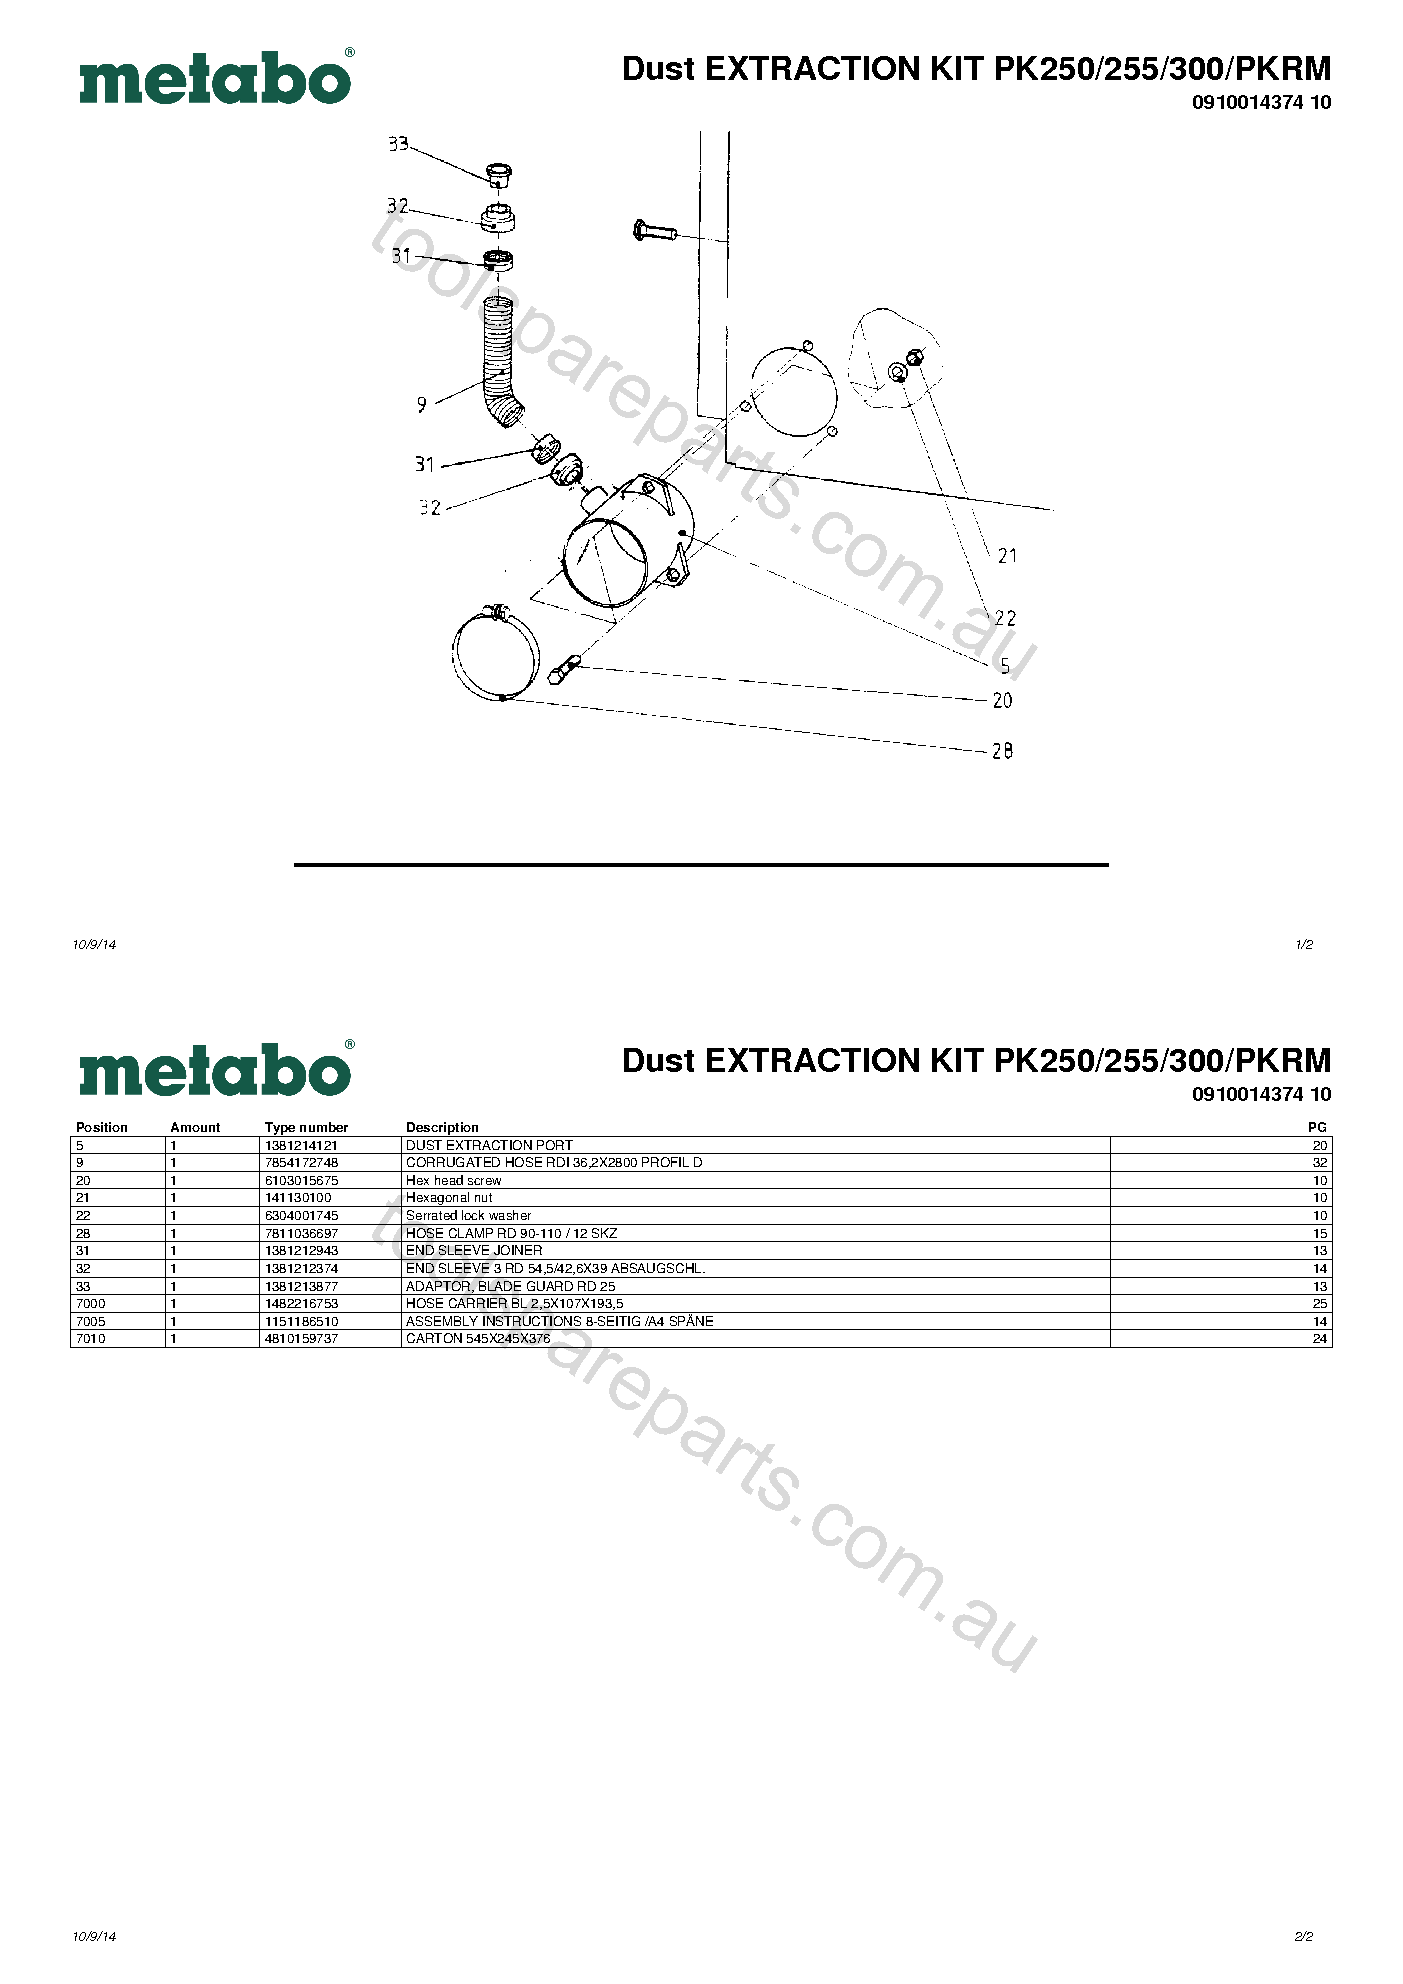 Metabo Dust EXTRACTION KIT PK250/255/300/PKRM 0910014374 10  Diagram 1